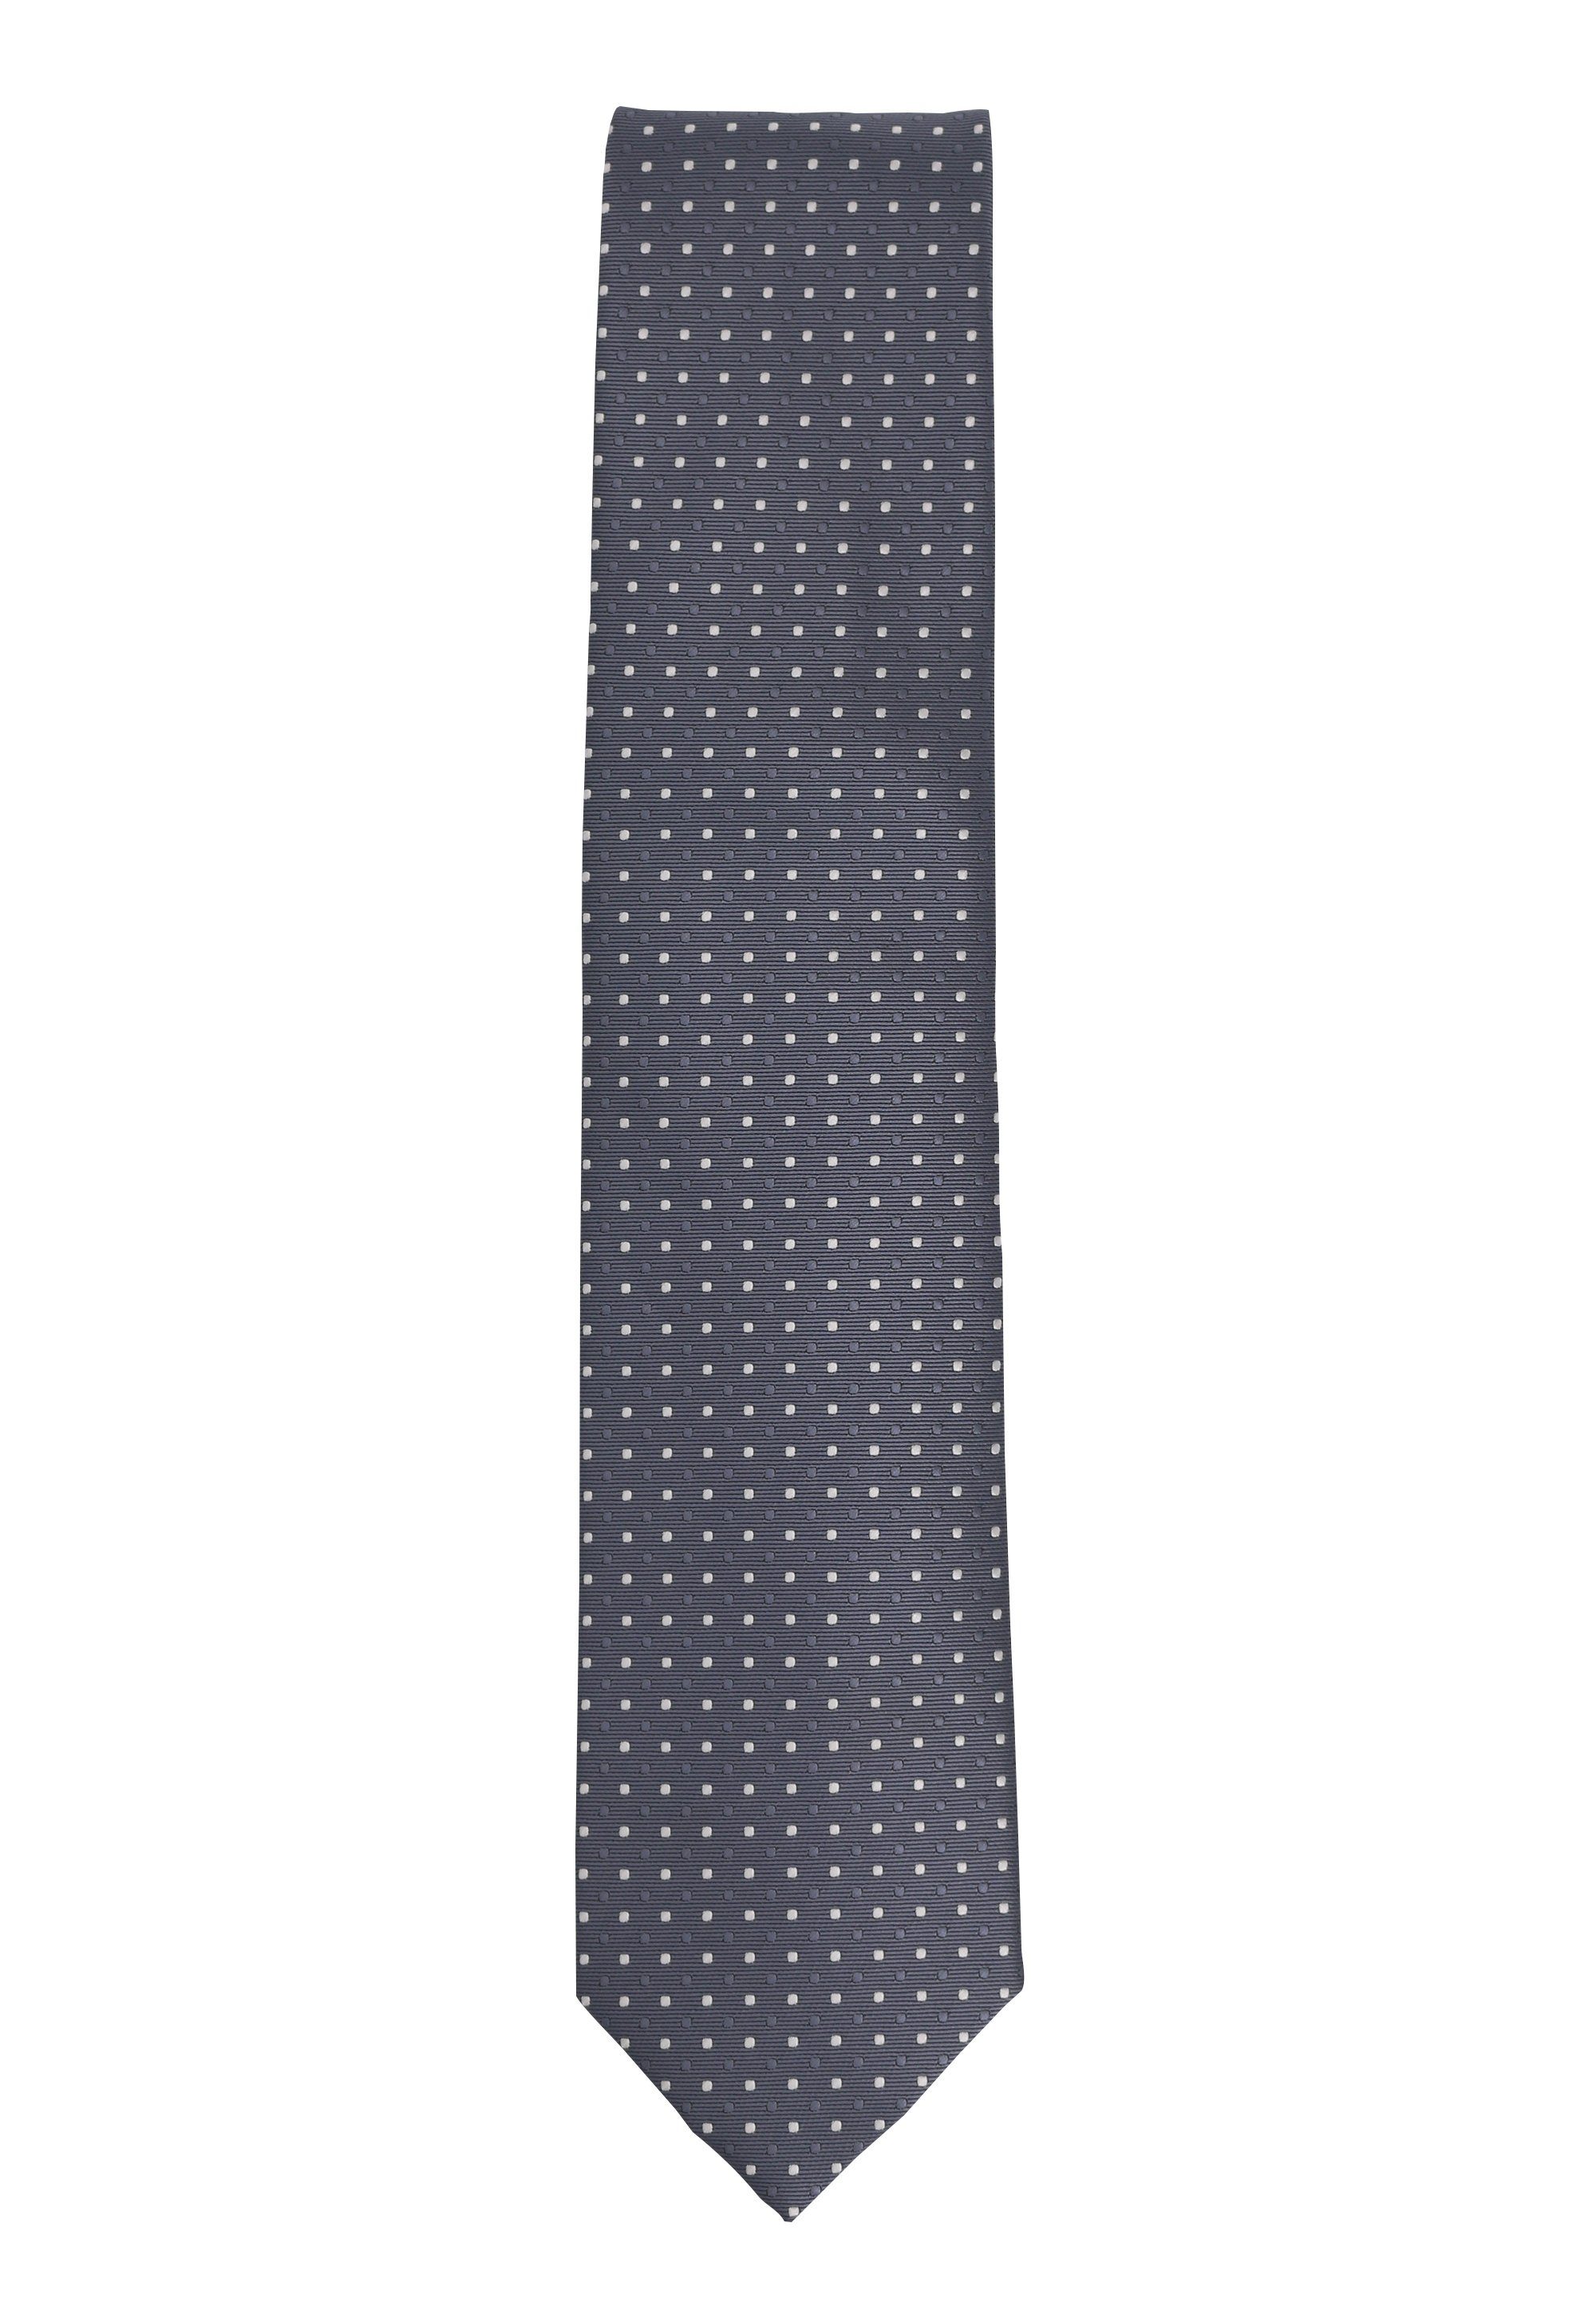 Herren Box, Fabio Breit in mit Krawatten (Grau, Gepunktet) Farini Grau 8cm (ohne (8cm), verschiedene Punkten Breite Krawatte Schlips - Weiß)